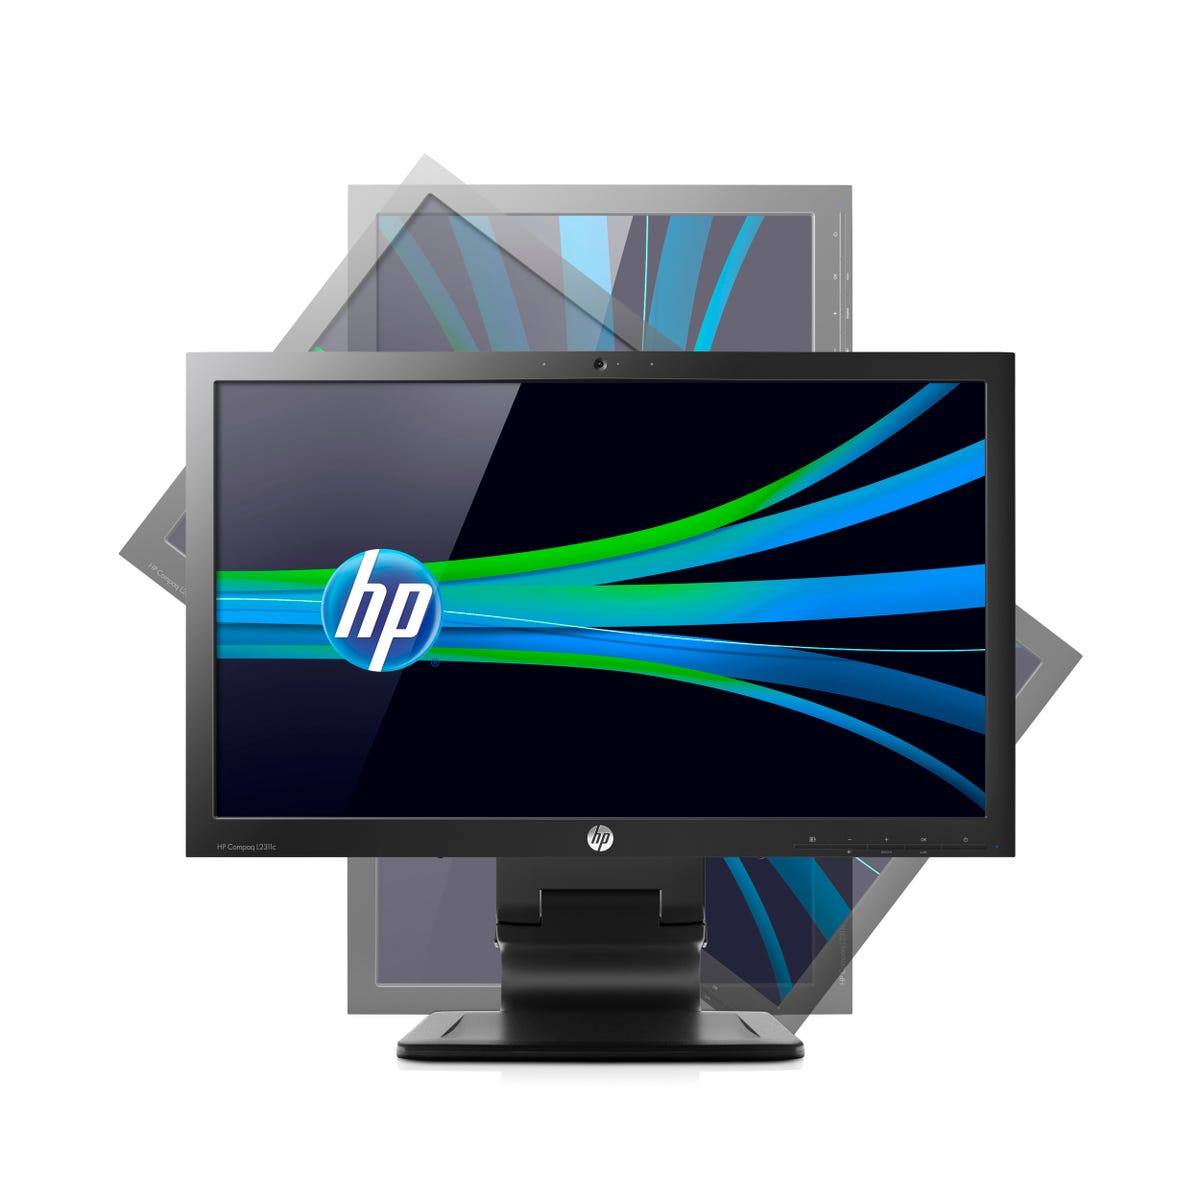 HP_Compaq_L2311c_-_Adjustability.jpg